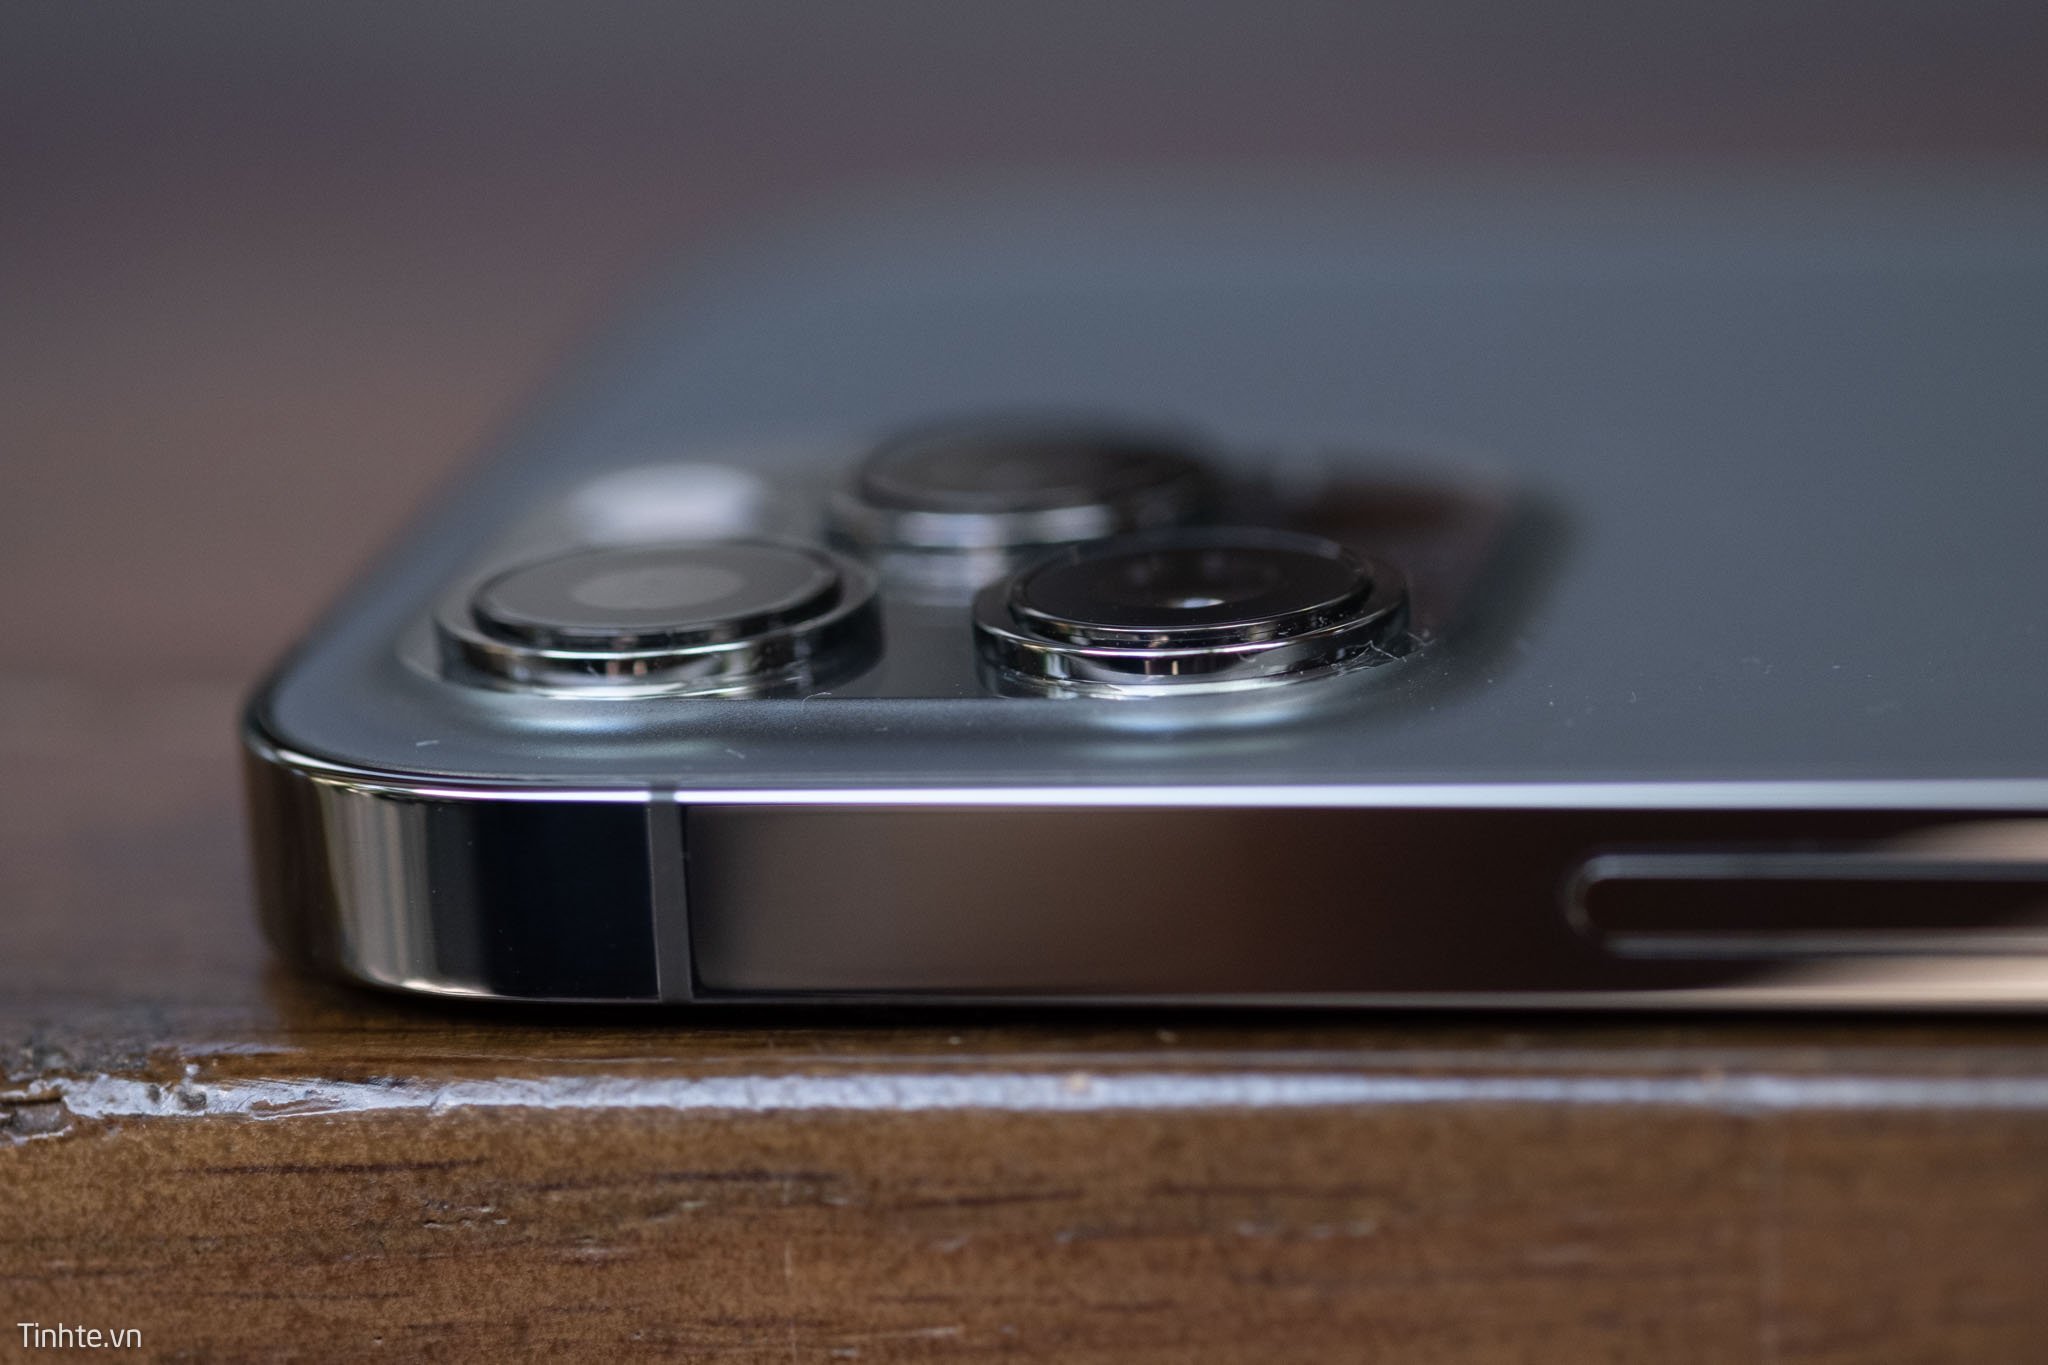 iPhone 12 Pro Max cụm camera lồi khác biệt, nhiều tính năng chụp ảnh mới mẻ